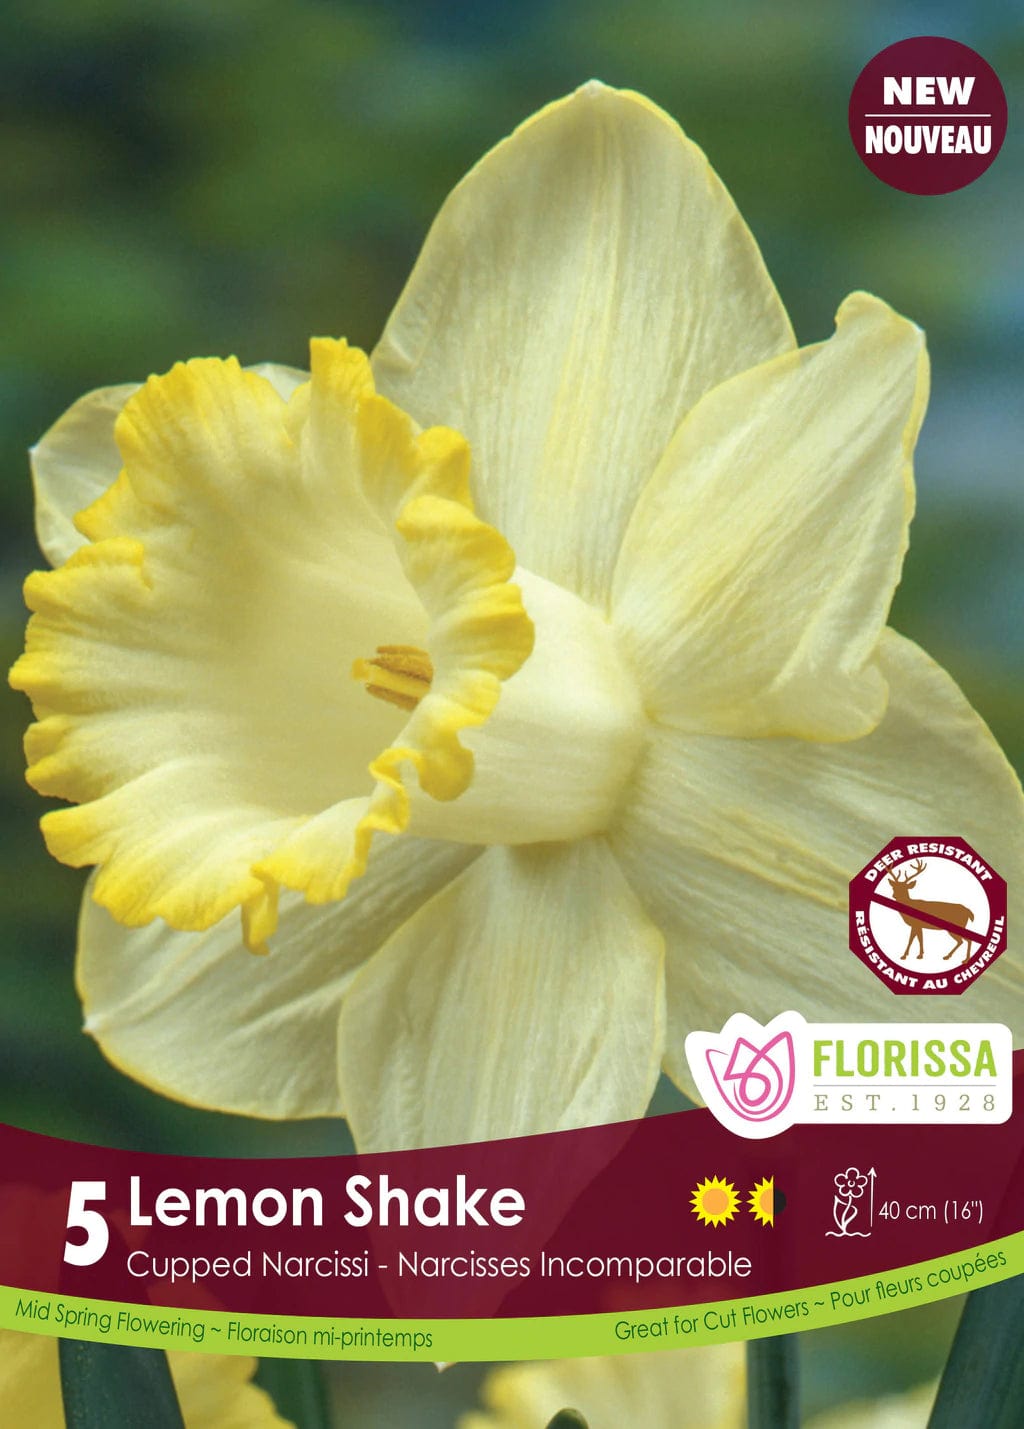 Narcissus - Lemon Shake, 5 Pack